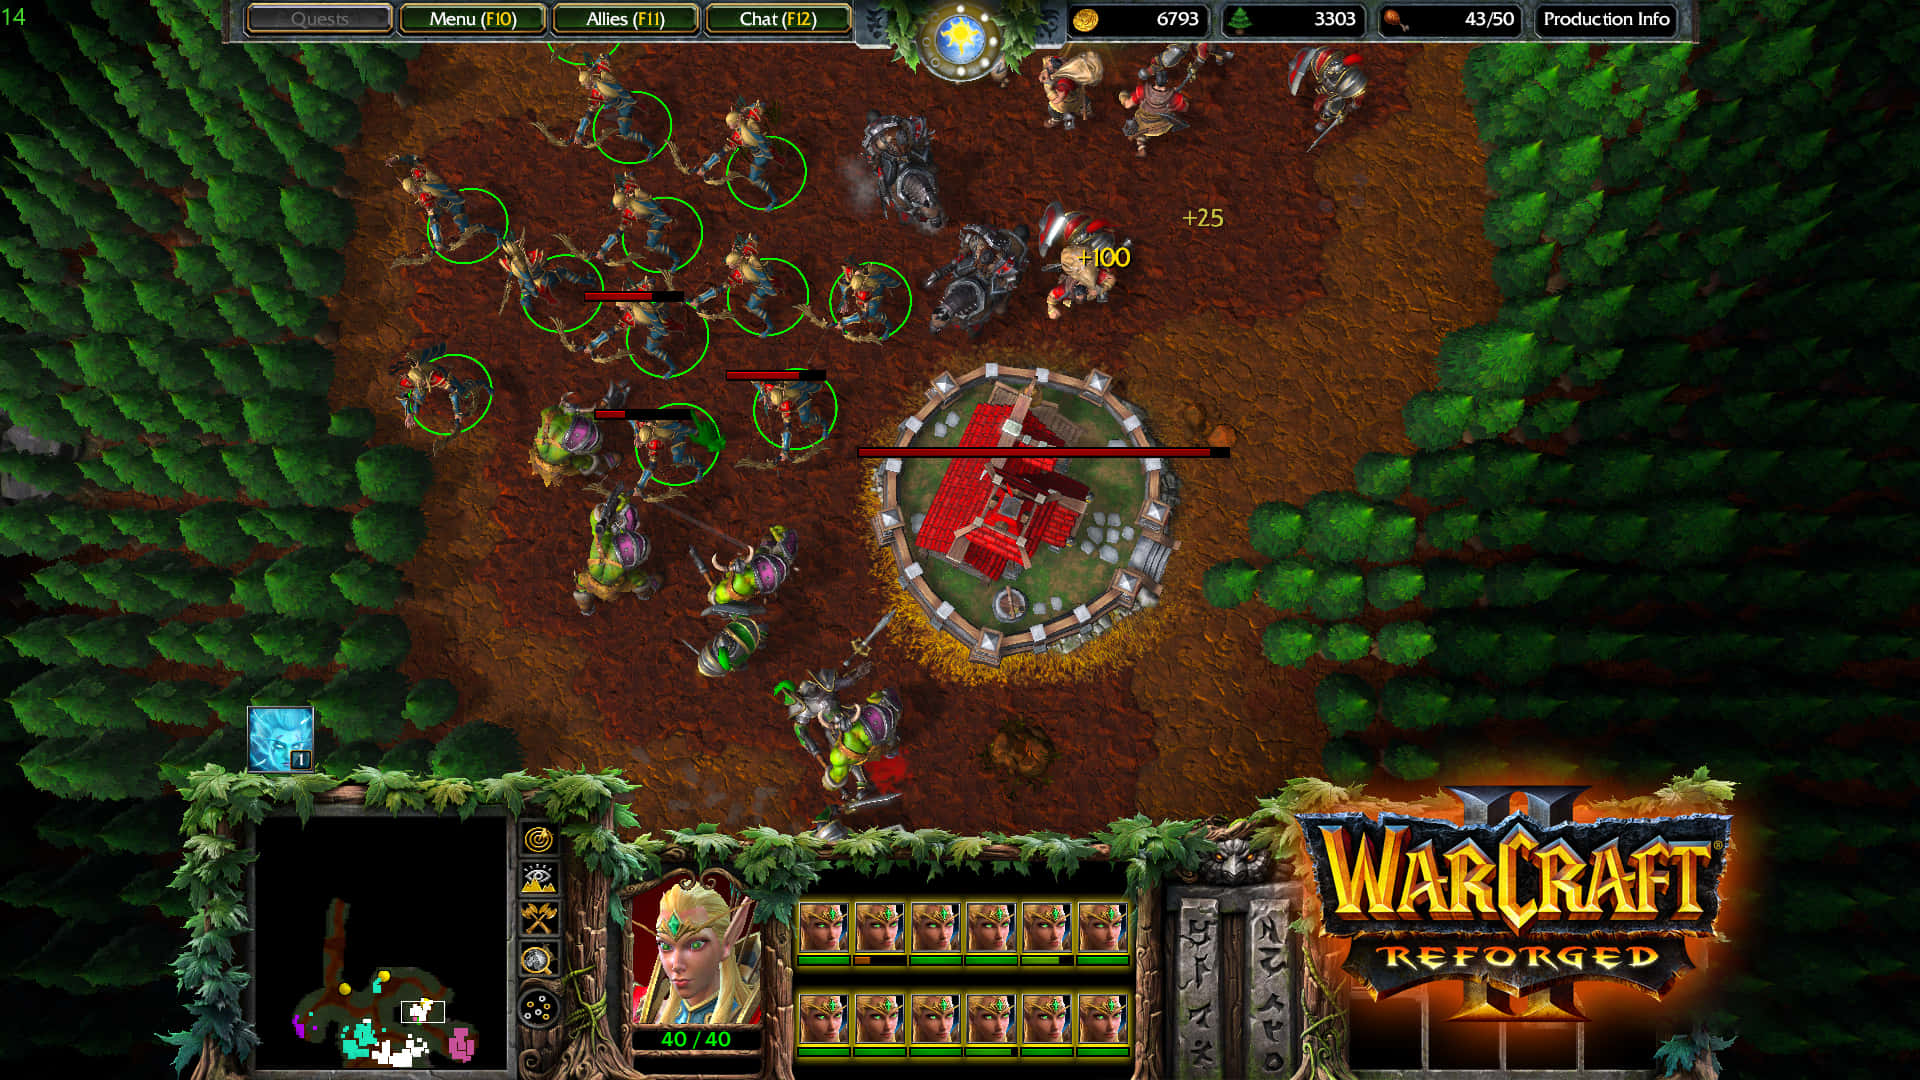 Episkekampe Finder Sted I World Of Warcraft 2. Wallpaper